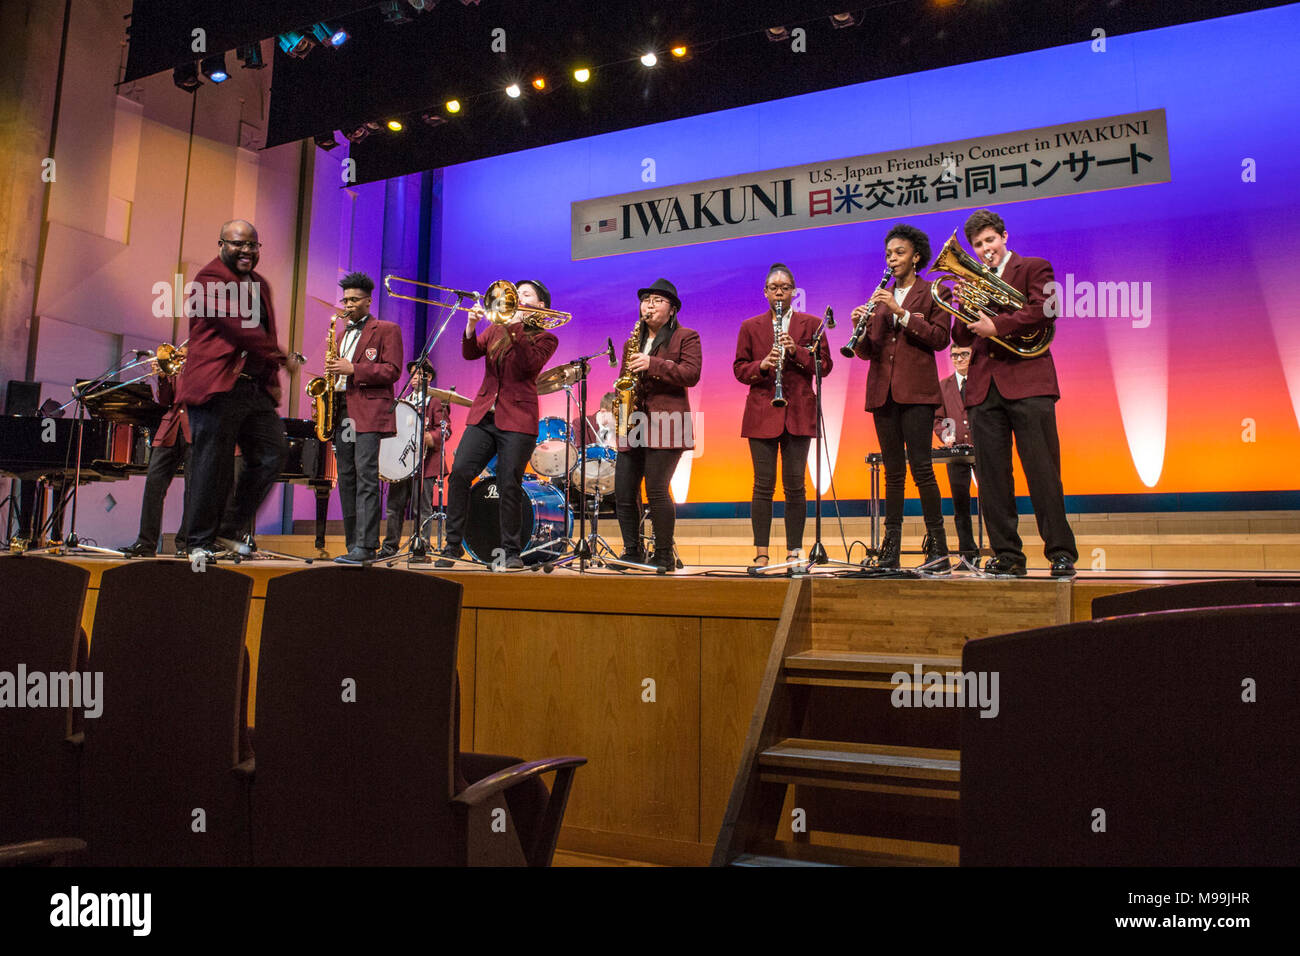 Strawbridge Allen, maestro de música de Matthew C. Perry High School, dirige a sus estudiantes en su rendimiento de "Funky Town/me siento bien" durante la octava edición de EE.UU.-Japón amistad Concierto en La Sinfonia de Iwakuni Concert Hall en la ciudad de Iwakuni, Japón, el 24 de febrero, 2018. El evento permitió a los estudiantes de diferentes culturas se juntan para llevar a cabo y tener la oportunidad de crear conexiones a través de la música, a pesar de la barrera del idioma. (Ee.Uu. Marine Corps Foto de stock